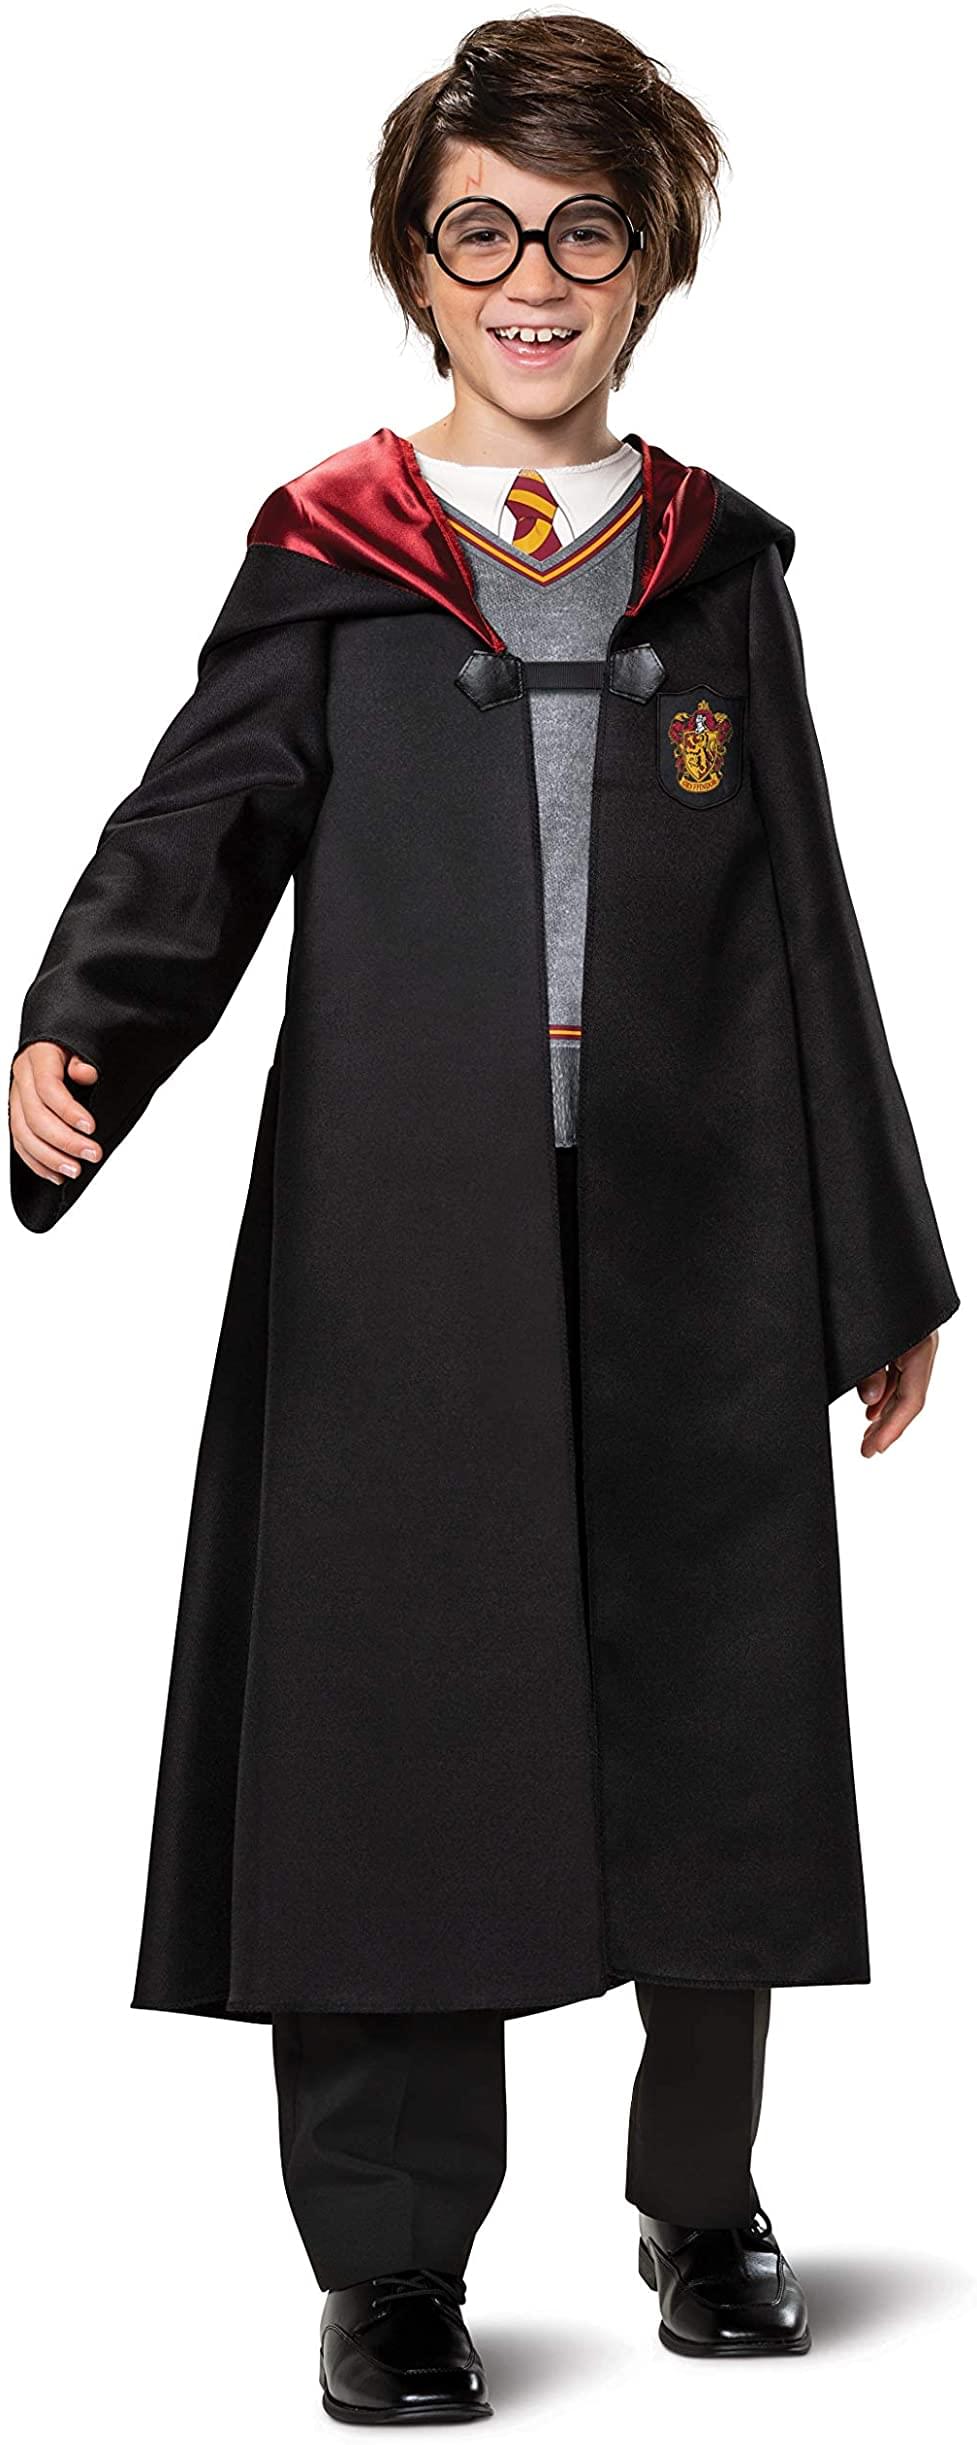 Photos - Fancy Dress Potter Harry  Classic Child Costume DGC-107519L-C 